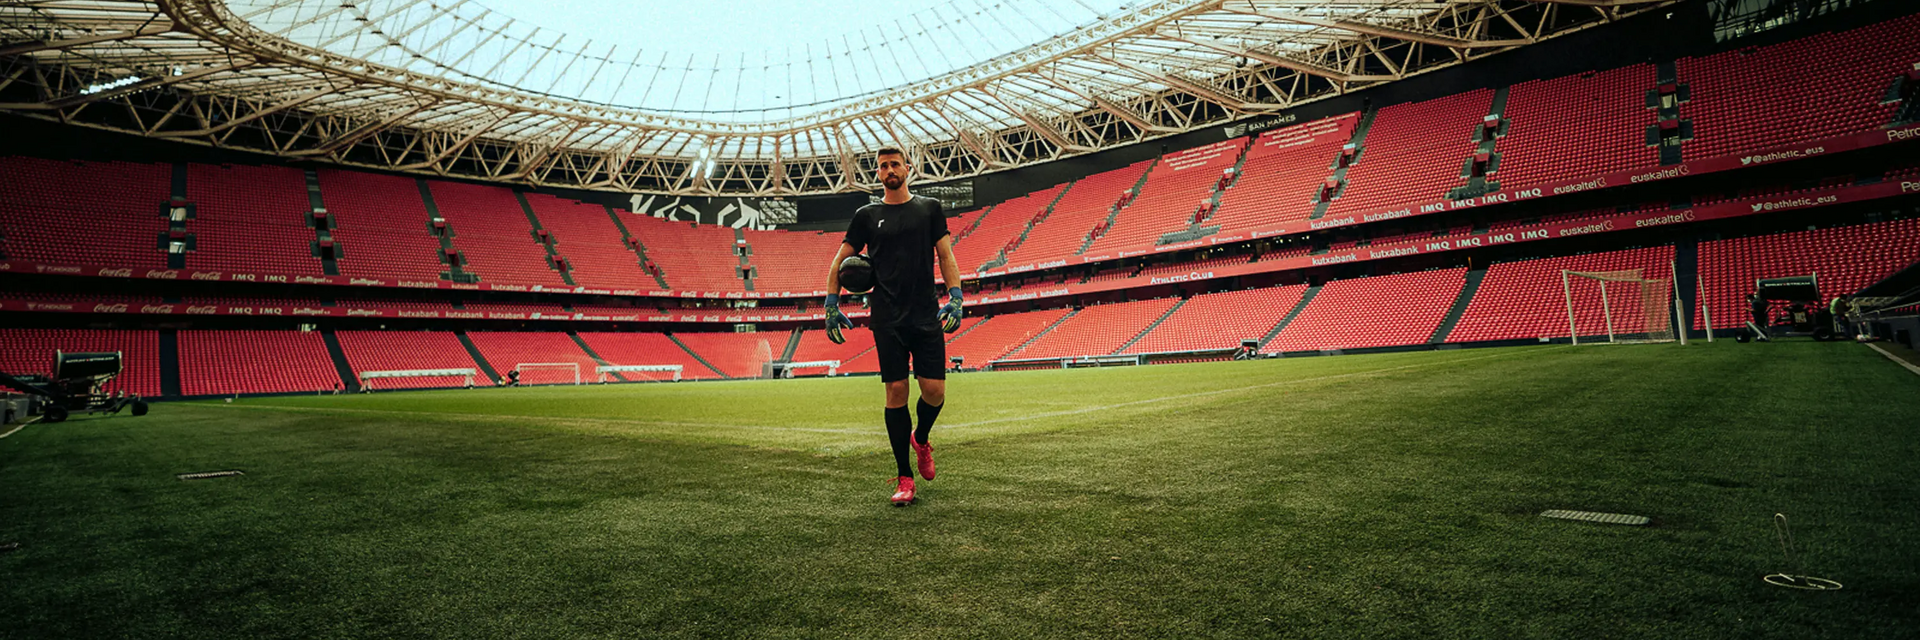 Piłkarz w odzieży piłkarskiej trzymający piłkę stojąc na stadionie